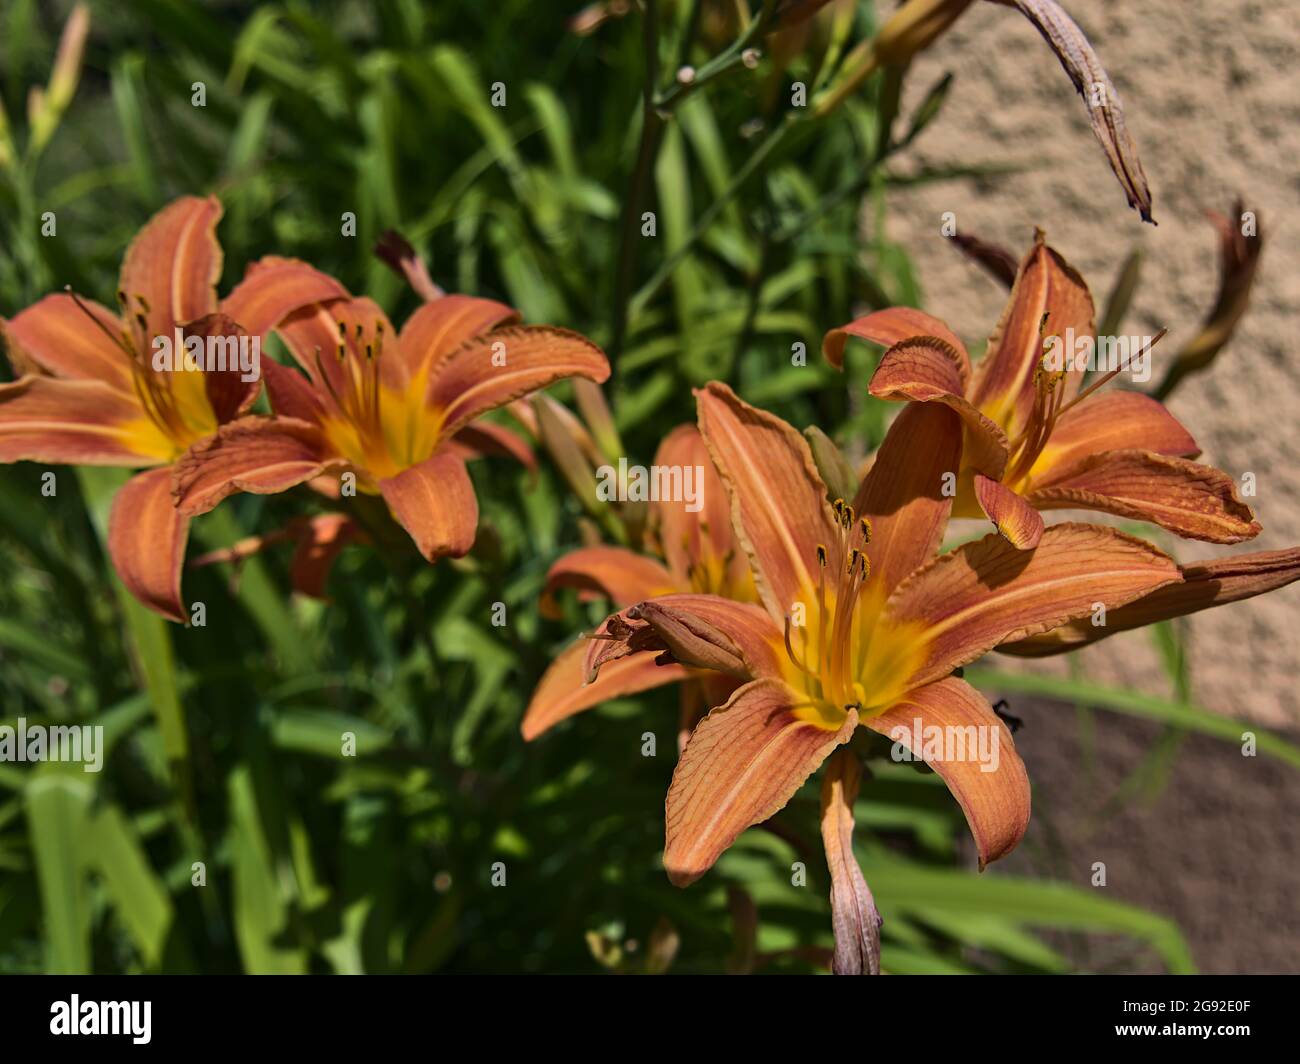 Nahaufnahme von schönen blühenden Lilien (lilium) mit orange und gelb gefärbten Blütenköpfen und grünen Blättern an sonnigen Sommertagen. Stockfoto